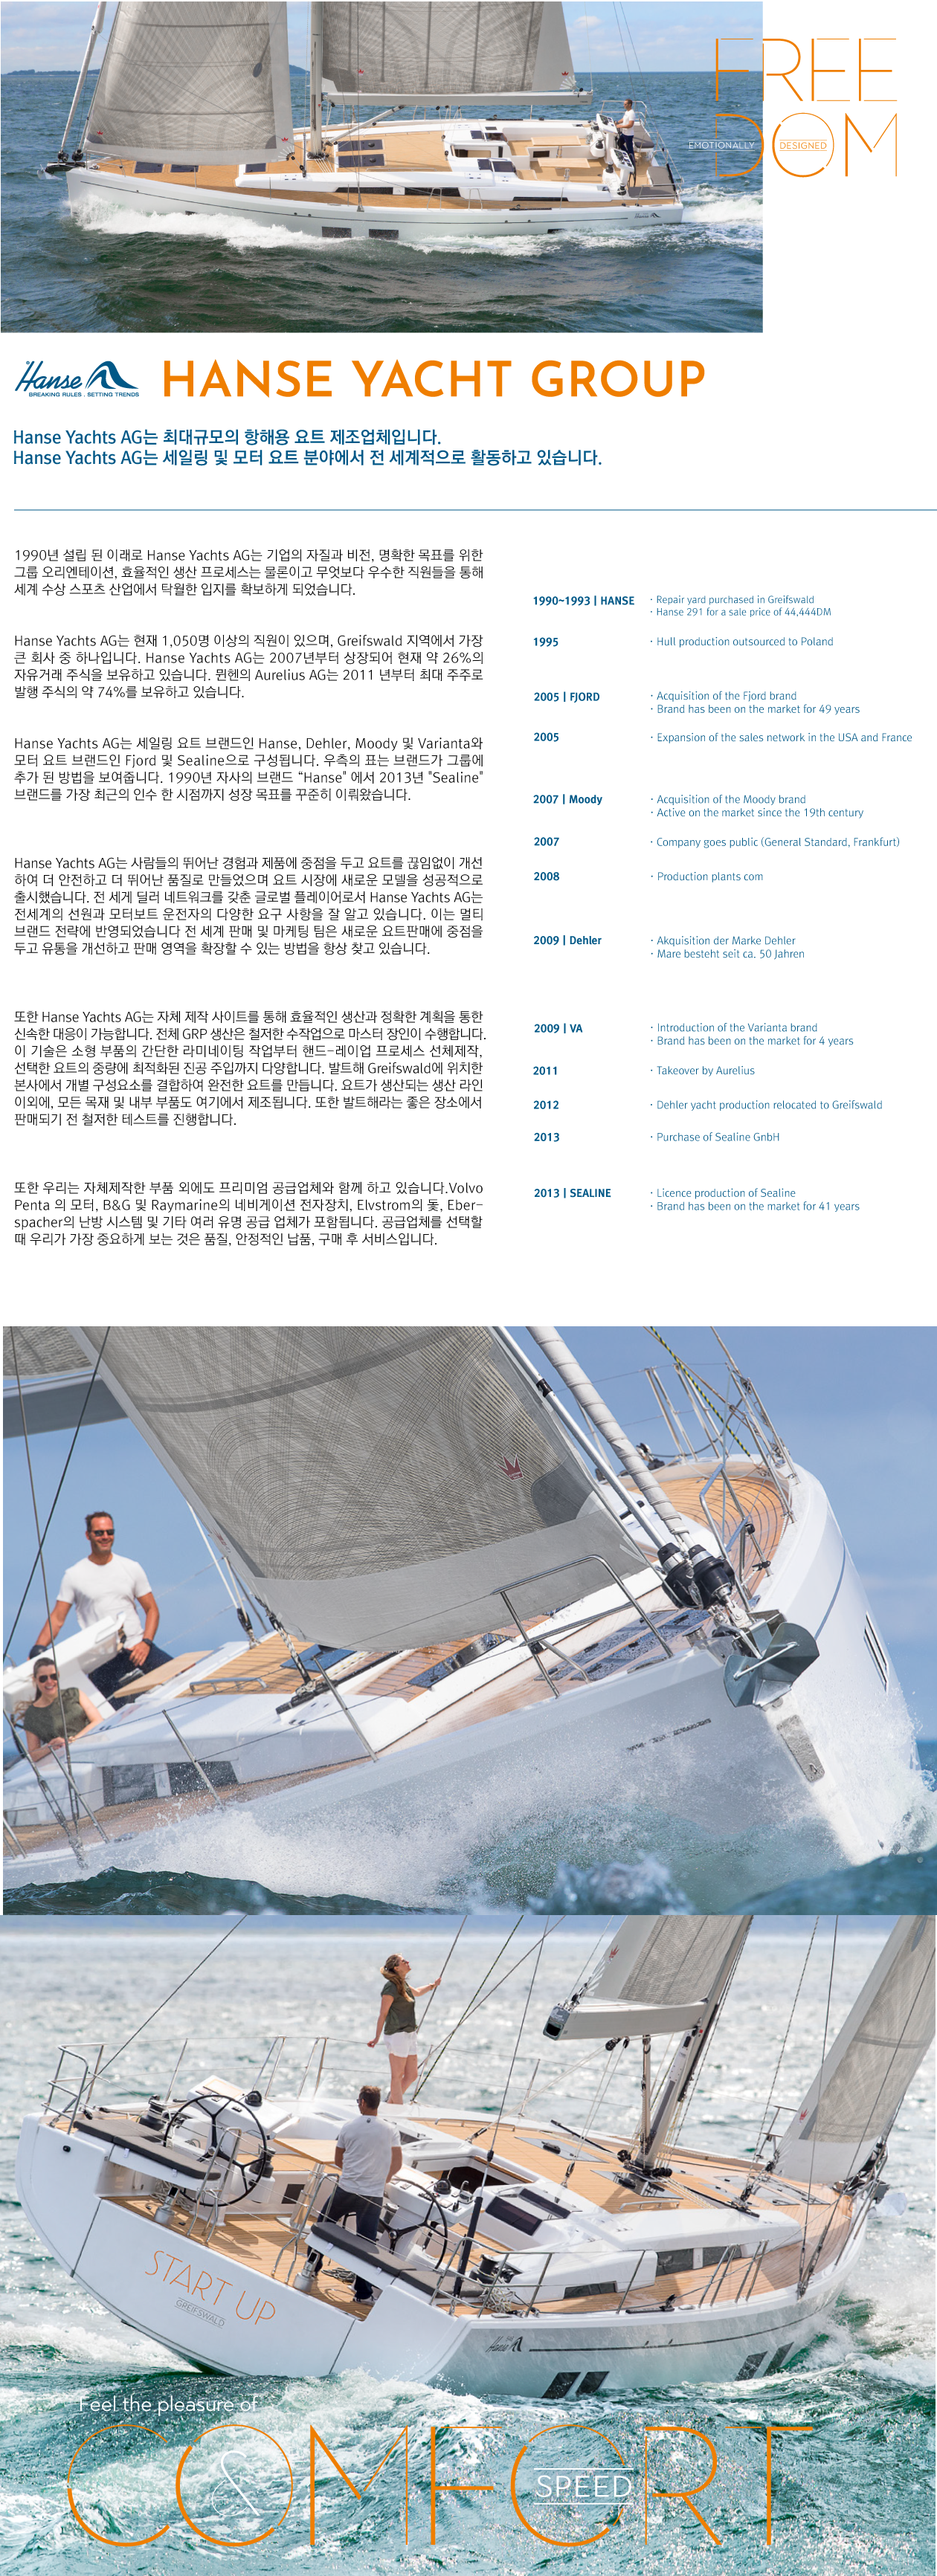 Hanse Yachts AG는 최대규모의 항해용 요트 제조업체입니다. Hanse Yachts AG는 세일링 및 모터요트 분야에서 전 세계적으로 활동하고 있습니다.